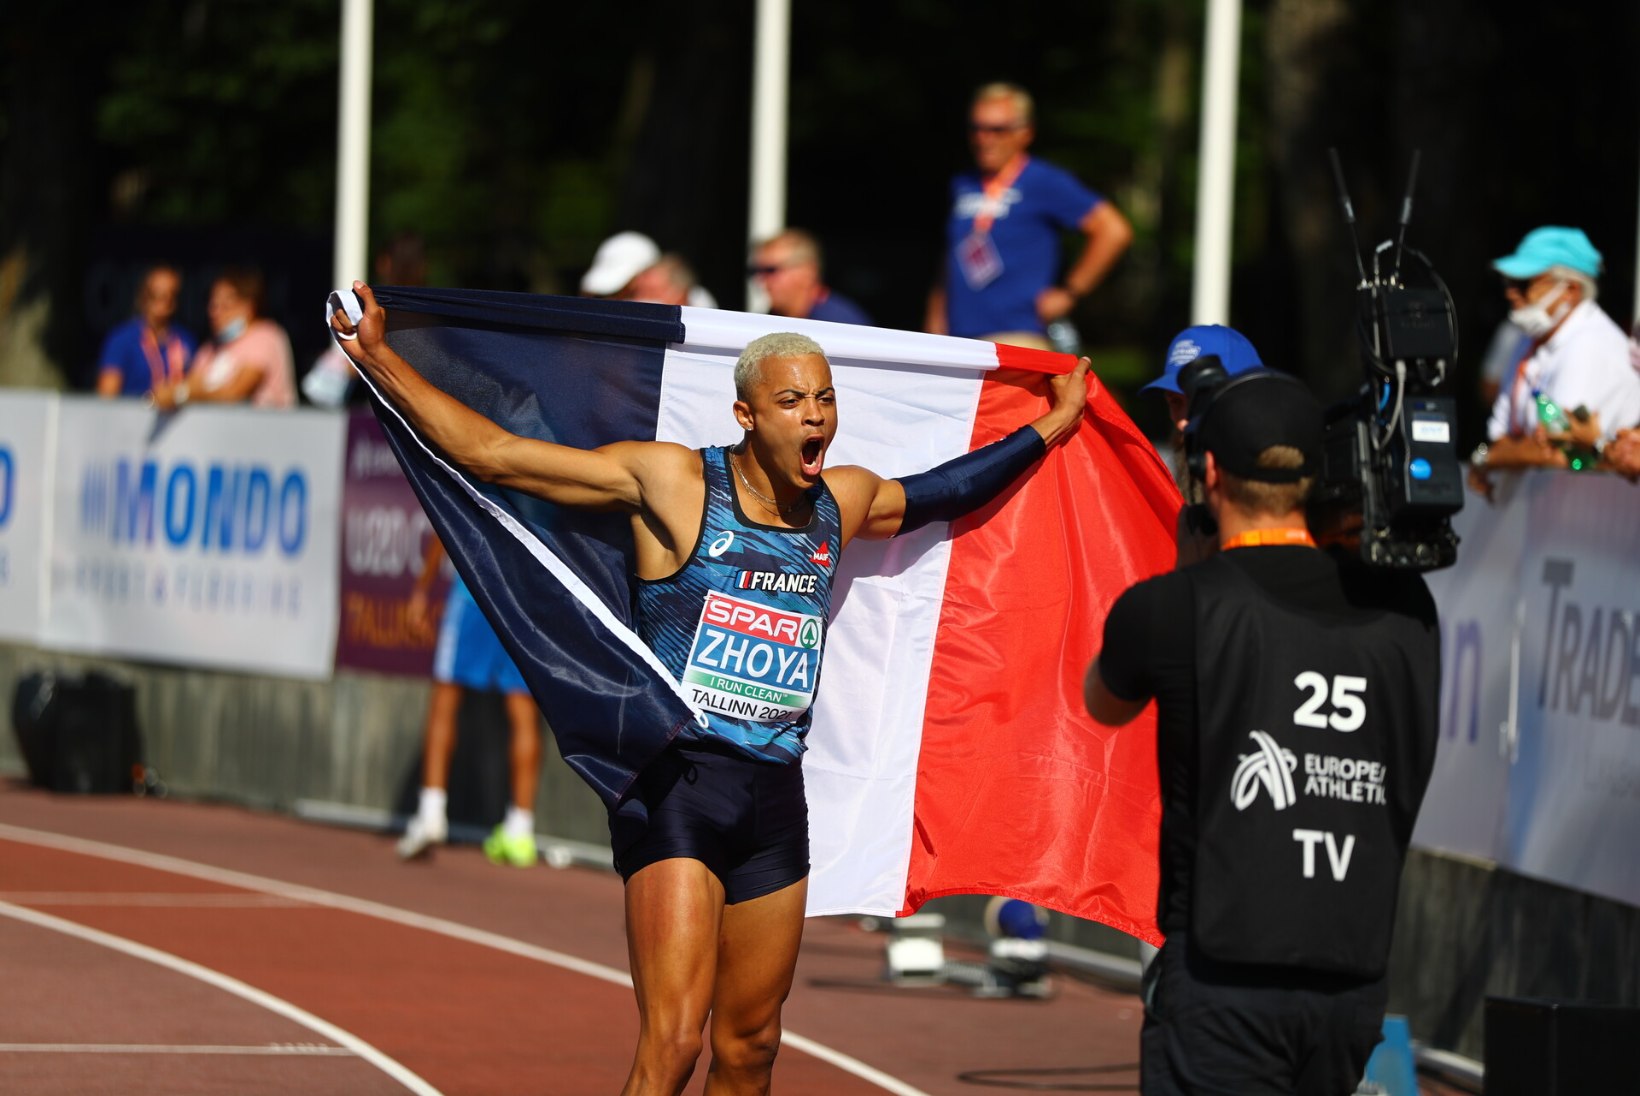 EMil vägevaid jookse teinud Prantsuse multitalent: tahan veel sel aastal maailmarekordi purustada!